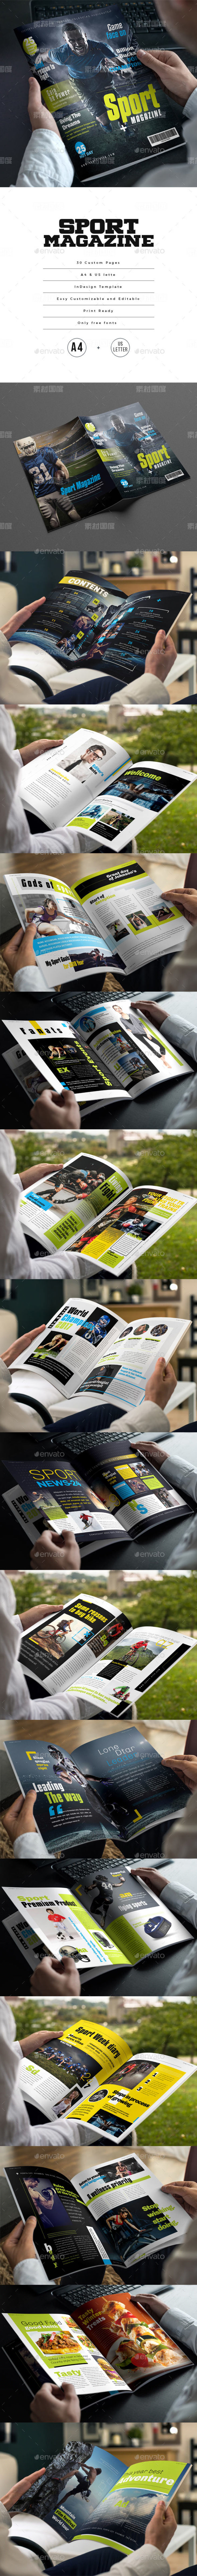 30P高品质的实用体育运动杂志画册手册楼书设计模板